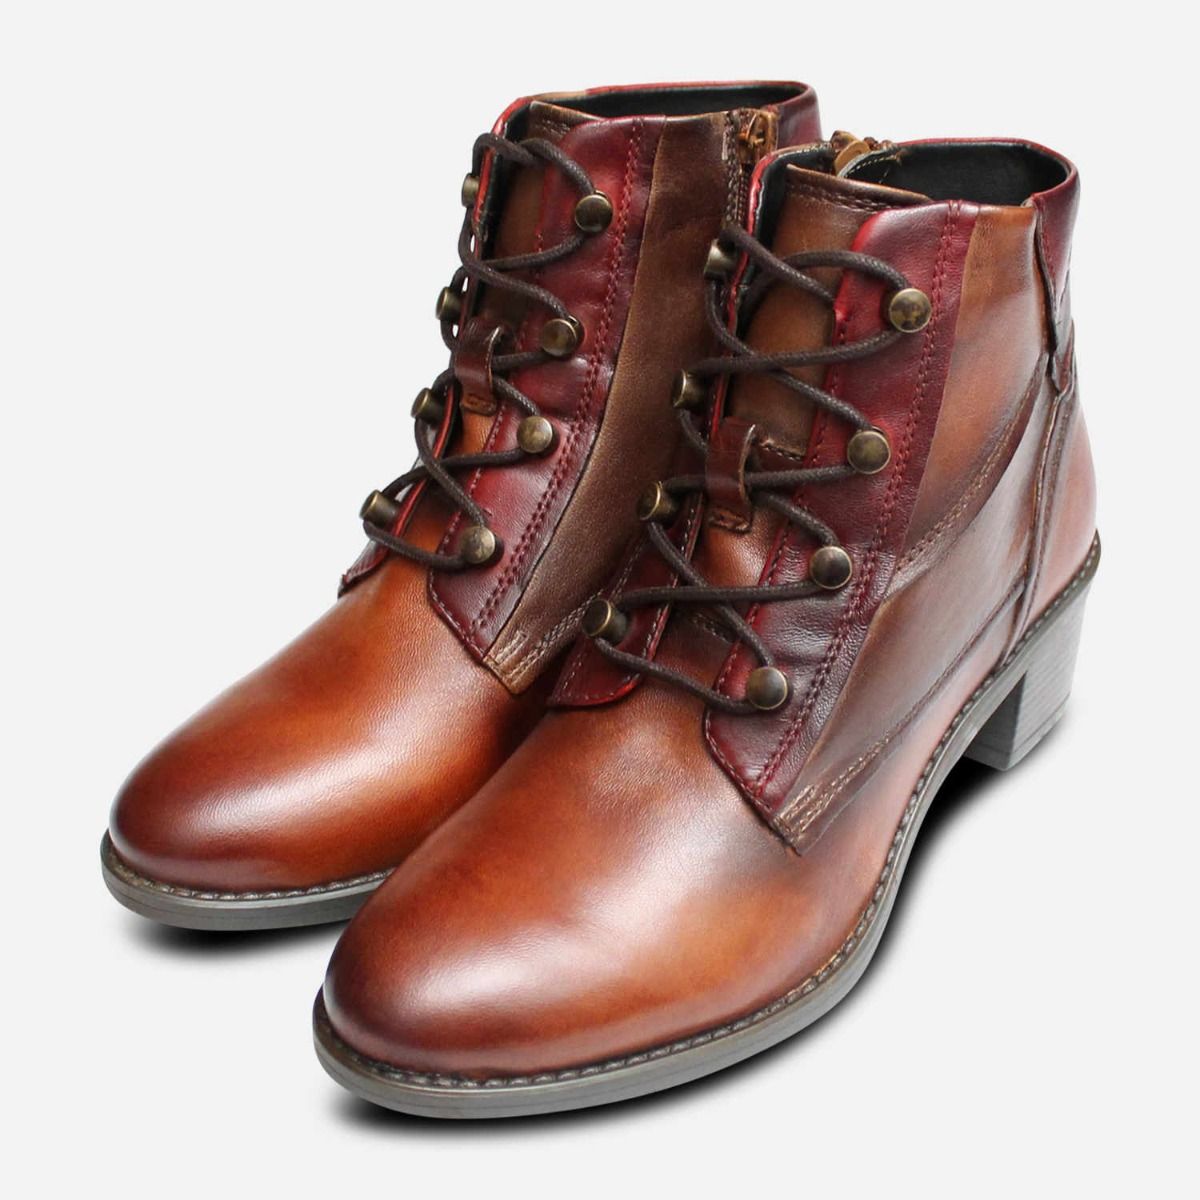 women's boots cognac leather